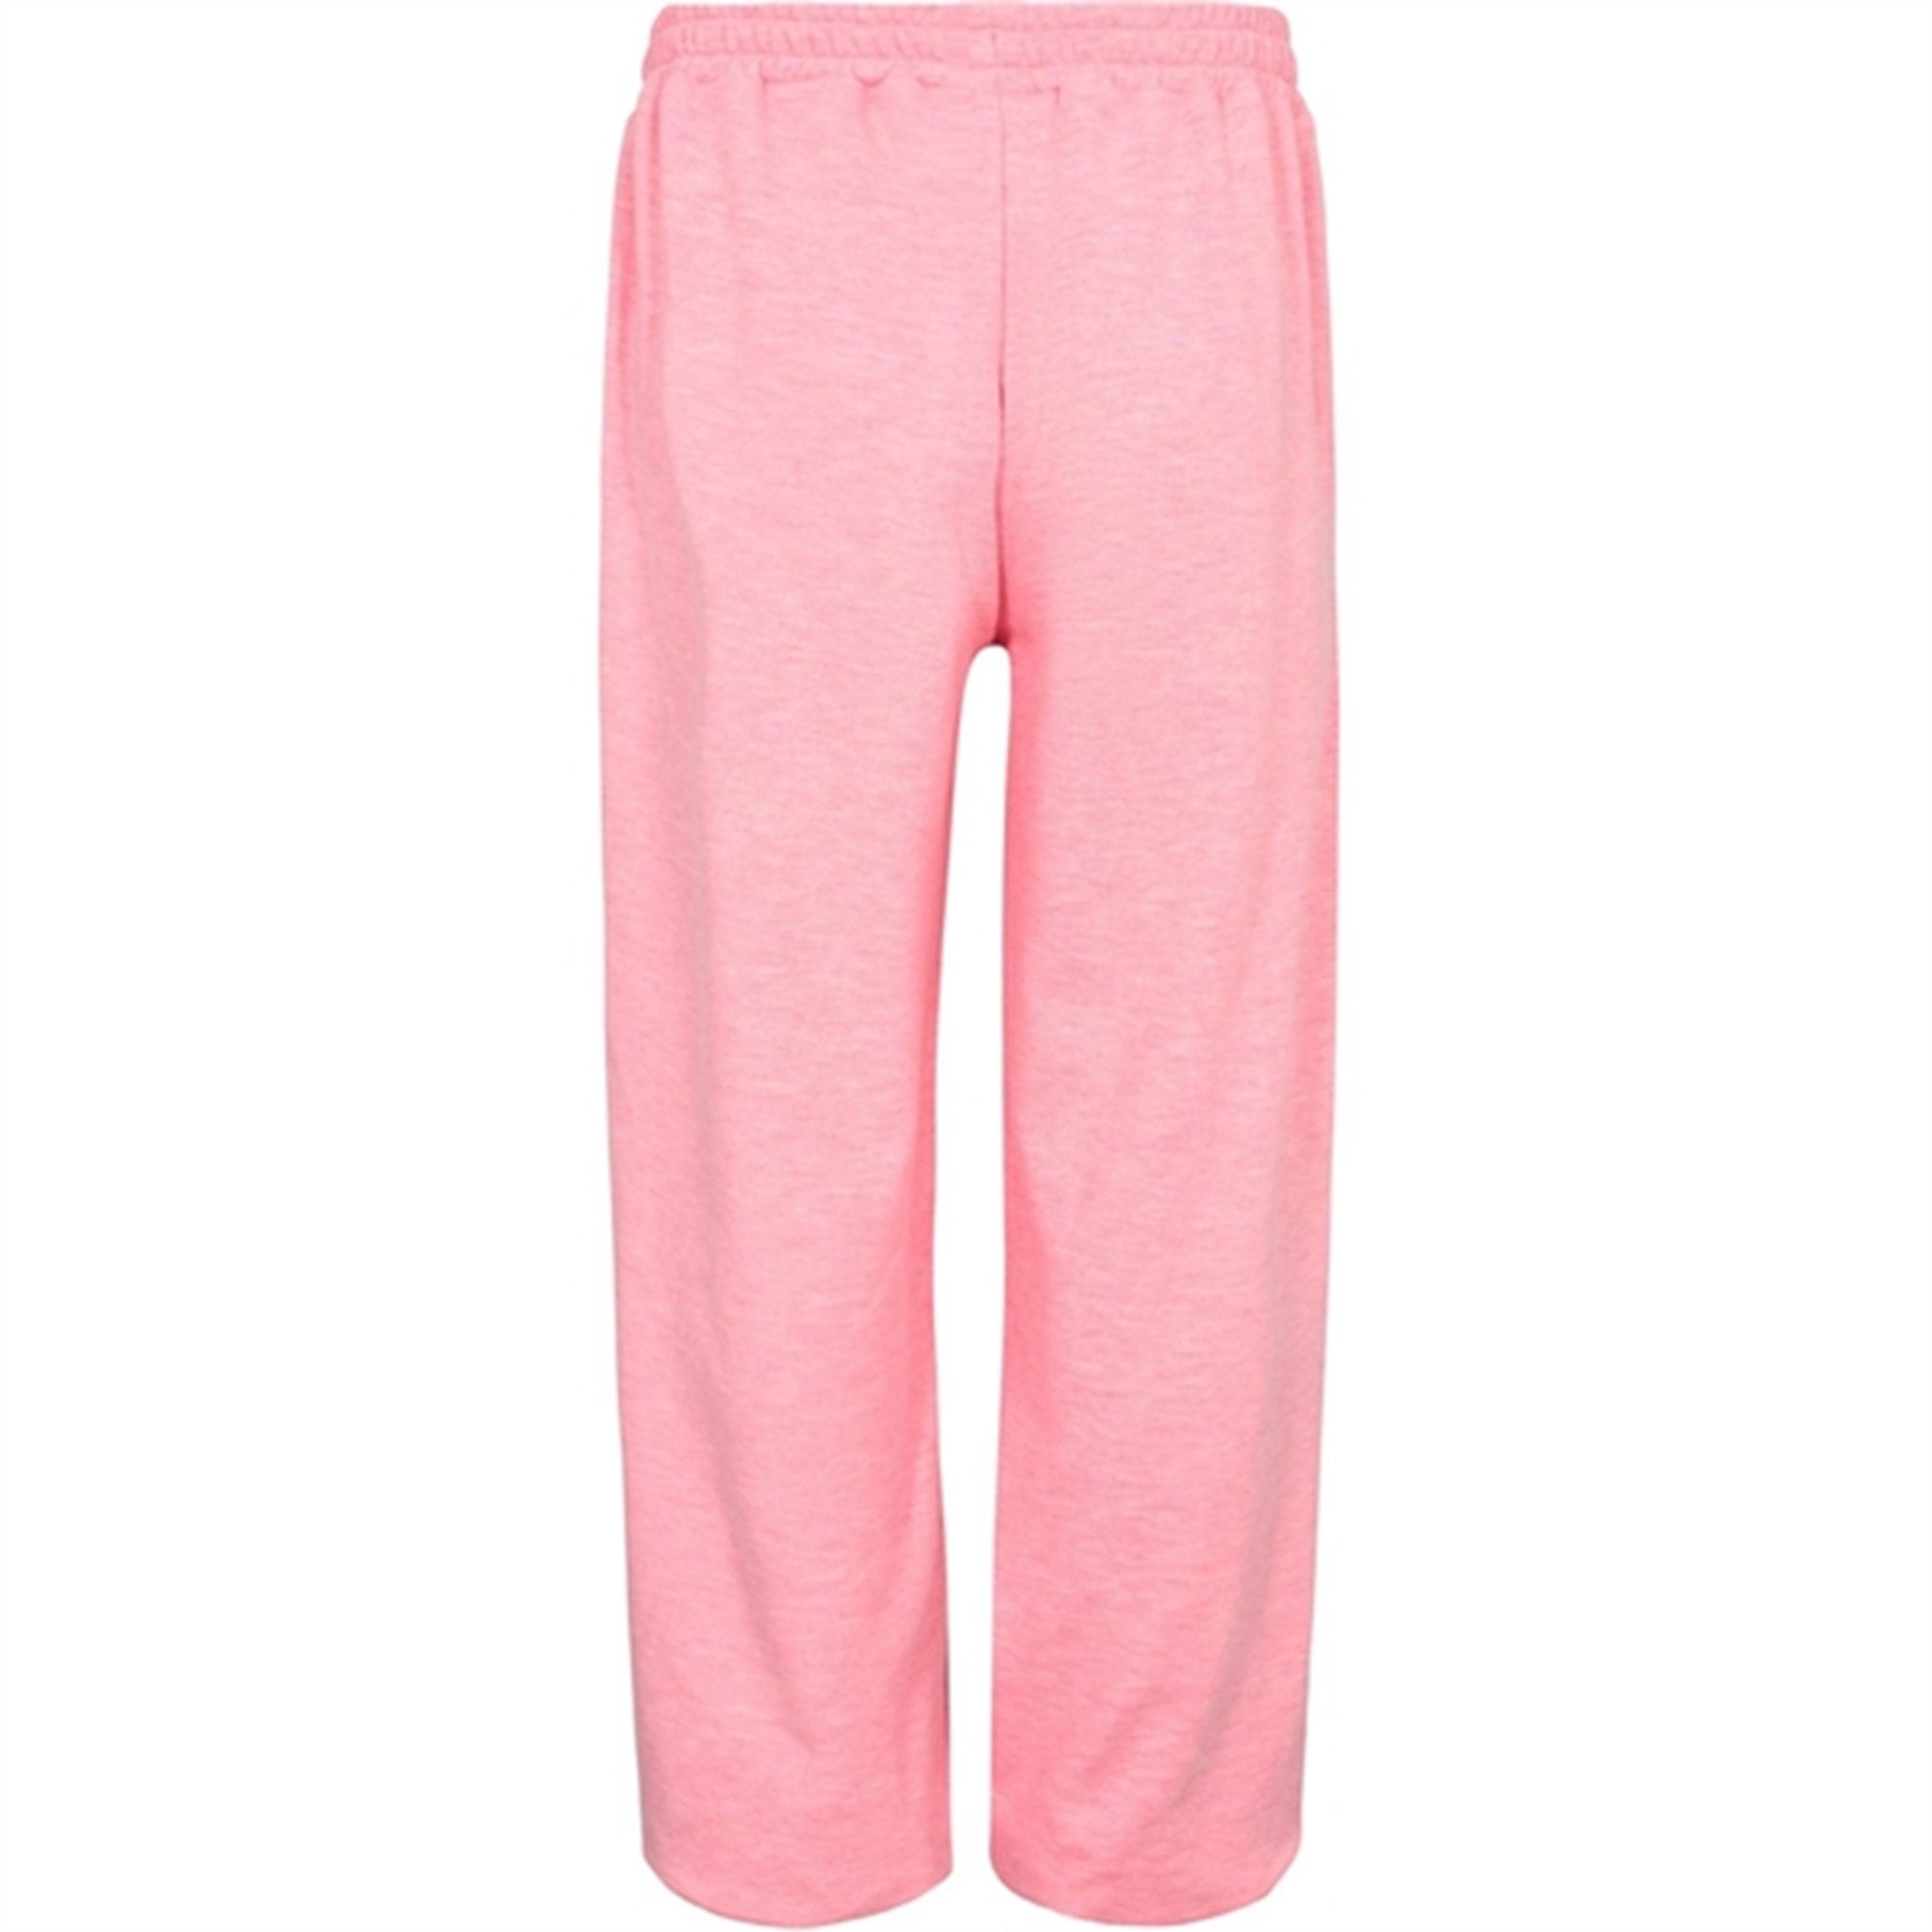 Sofie Schnoor Light Pink Sweatpants 3